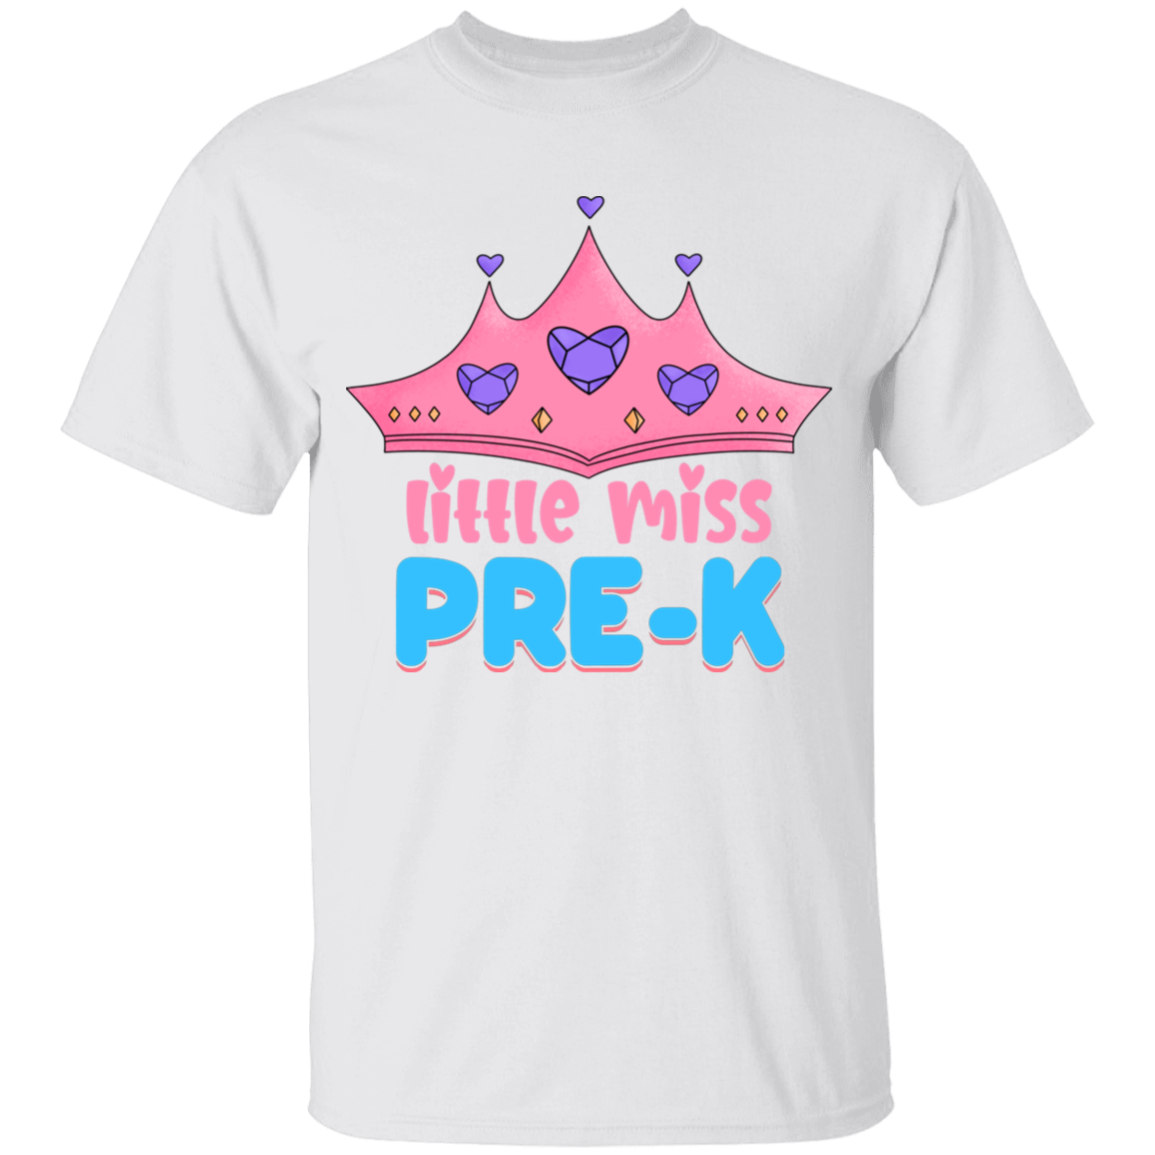 Little Miss PreK Youth Cotton T-Shirt